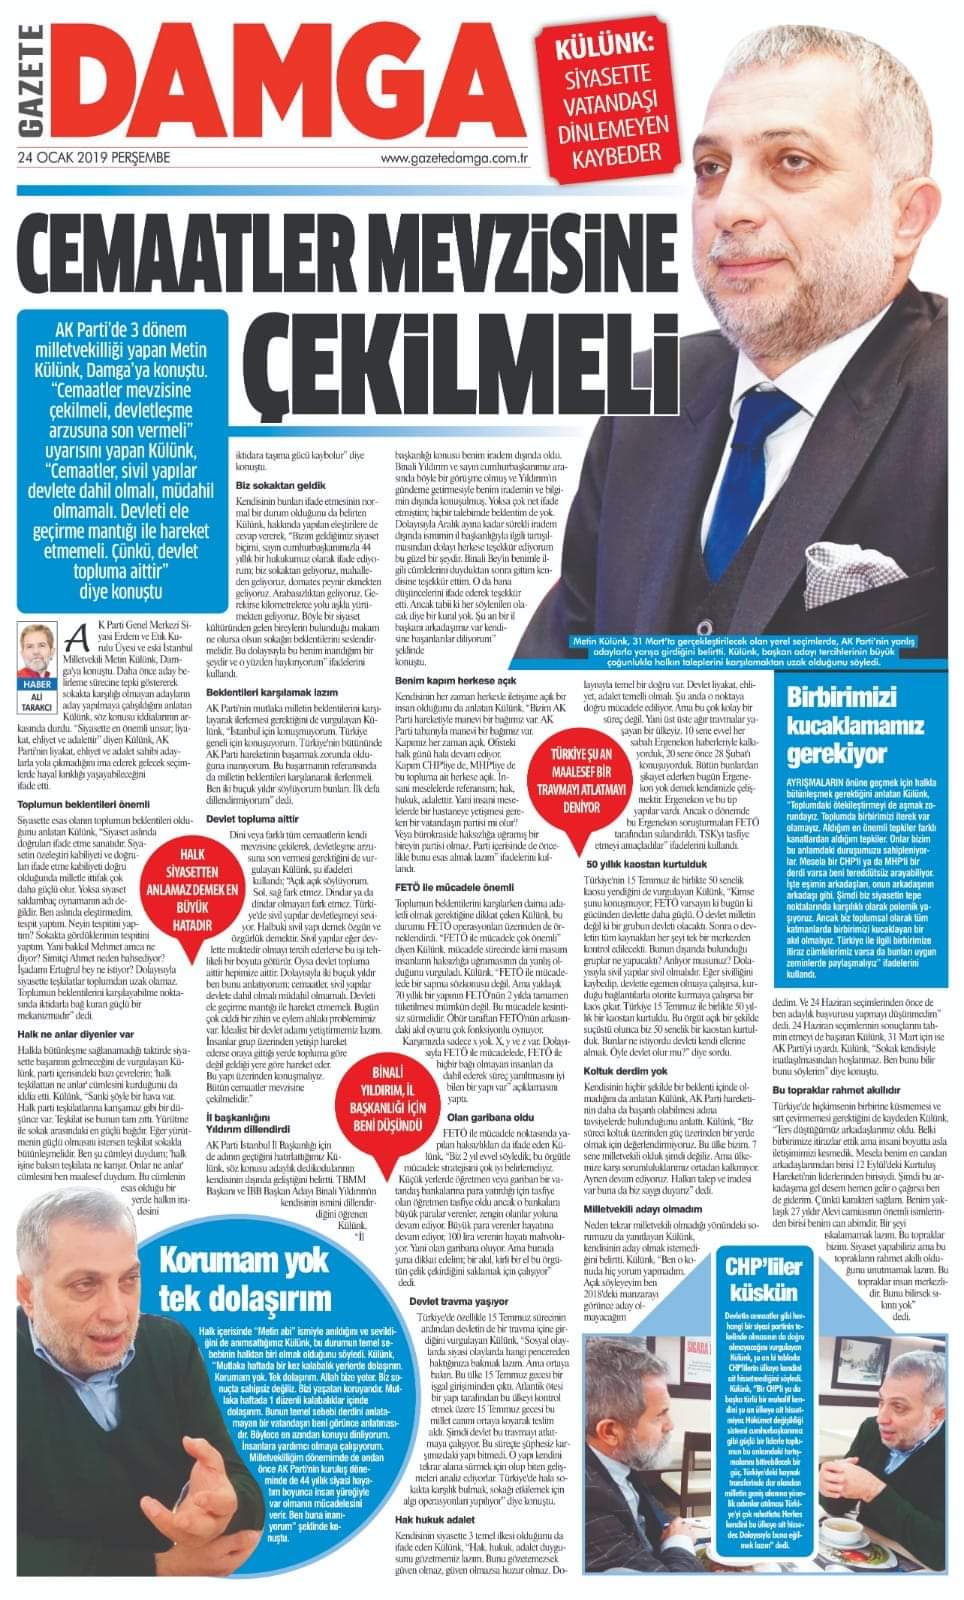 AKP'li Metin Külünk: Partimiz 31 Mart'ta hayal kırıklığı yaşayabilir